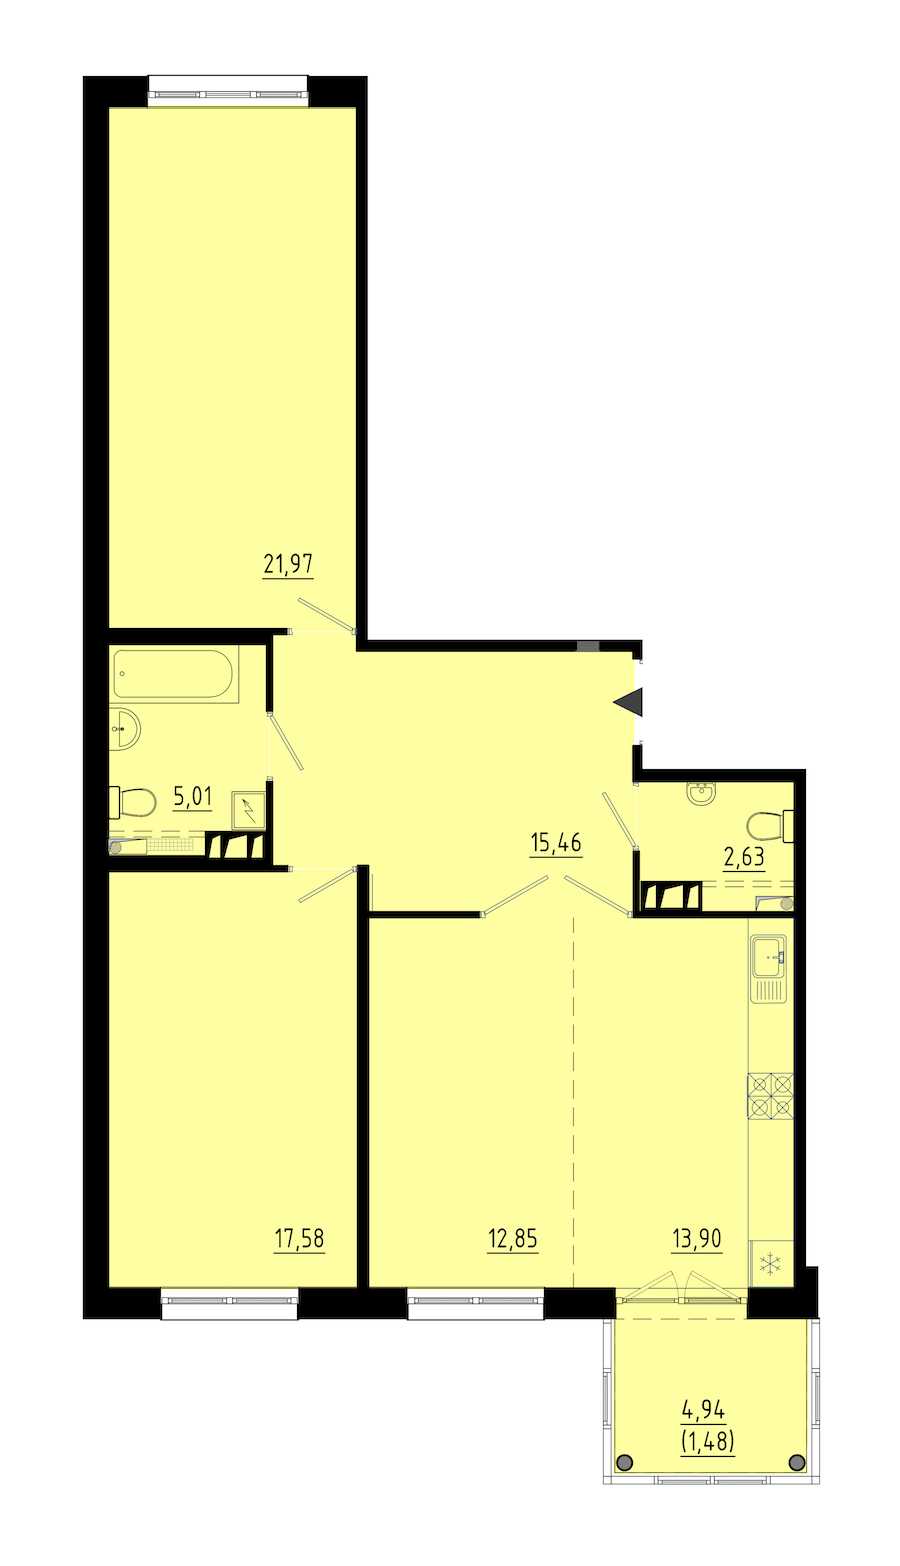 Двухкомнатная квартира в : площадь 90.3 м2 , этаж: 3 – купить в Санкт-Петербурге